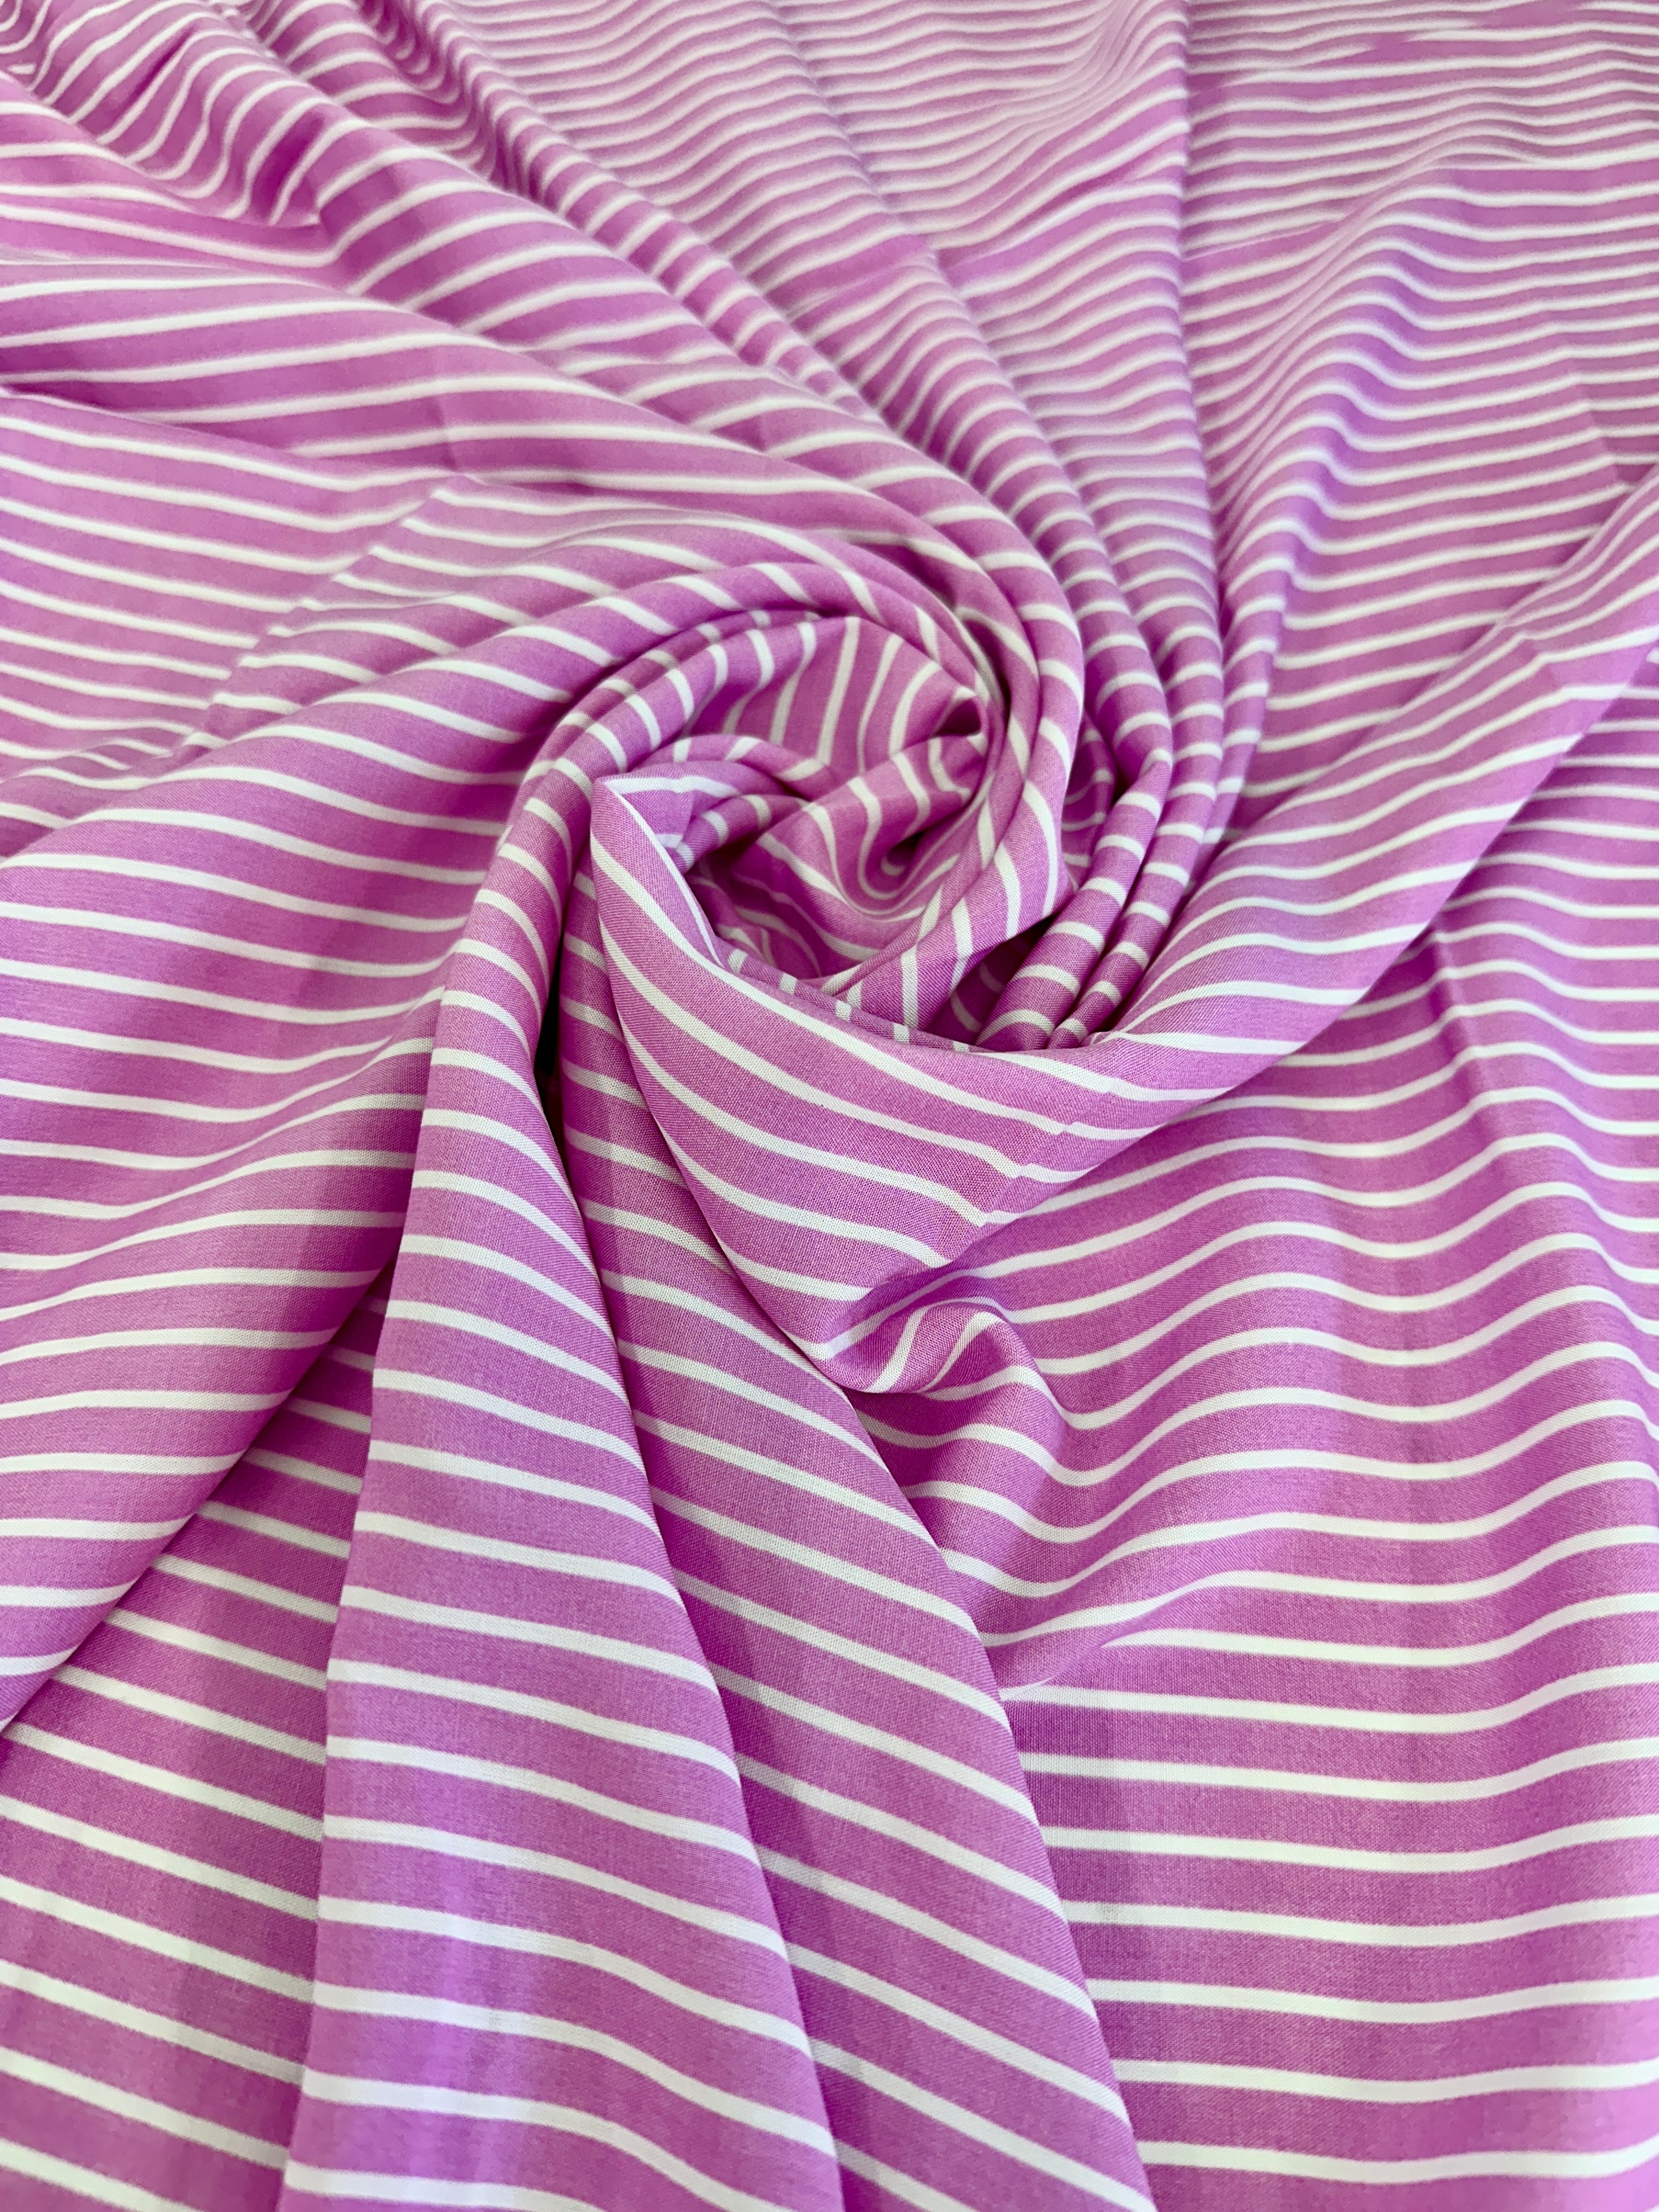 Pink White Stripped Cotton, online textile store, sewing, fabric store, sewing store, cheap fabric store, kiki textiles